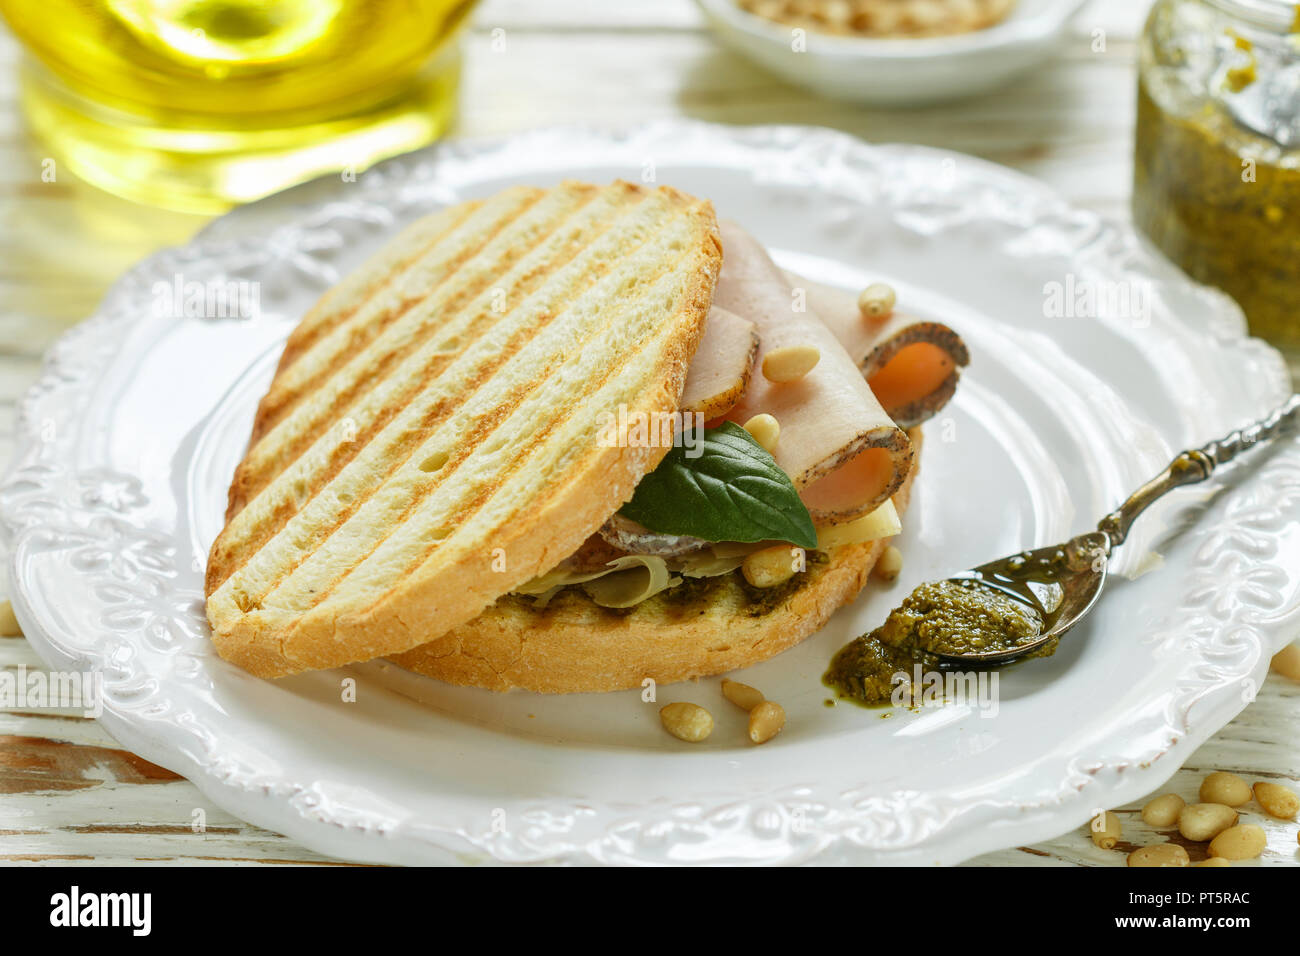 Délicieux sandwich avec jambon, fromage cuit au four, sauce pesto et pignons de pin. Collation santé pour les gourmets. Selective focus Banque D'Images